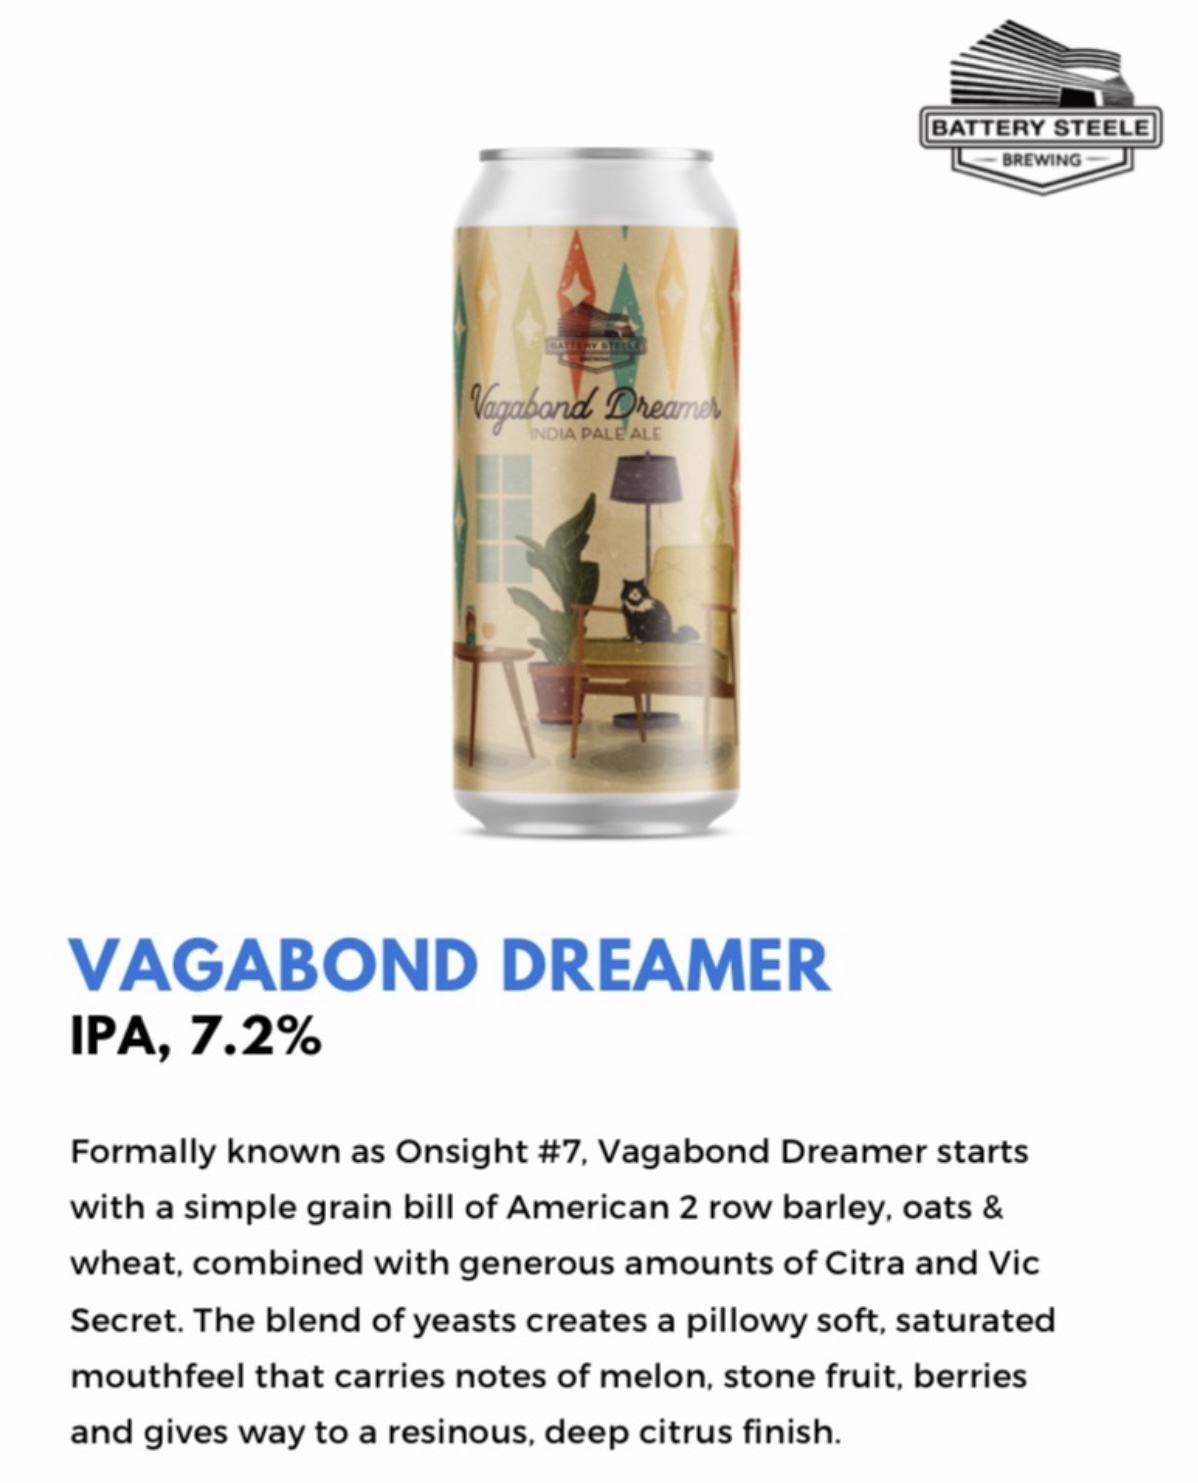 images/beer/IPA BEER/Battery Steele Vagabond Dreamer.jpg